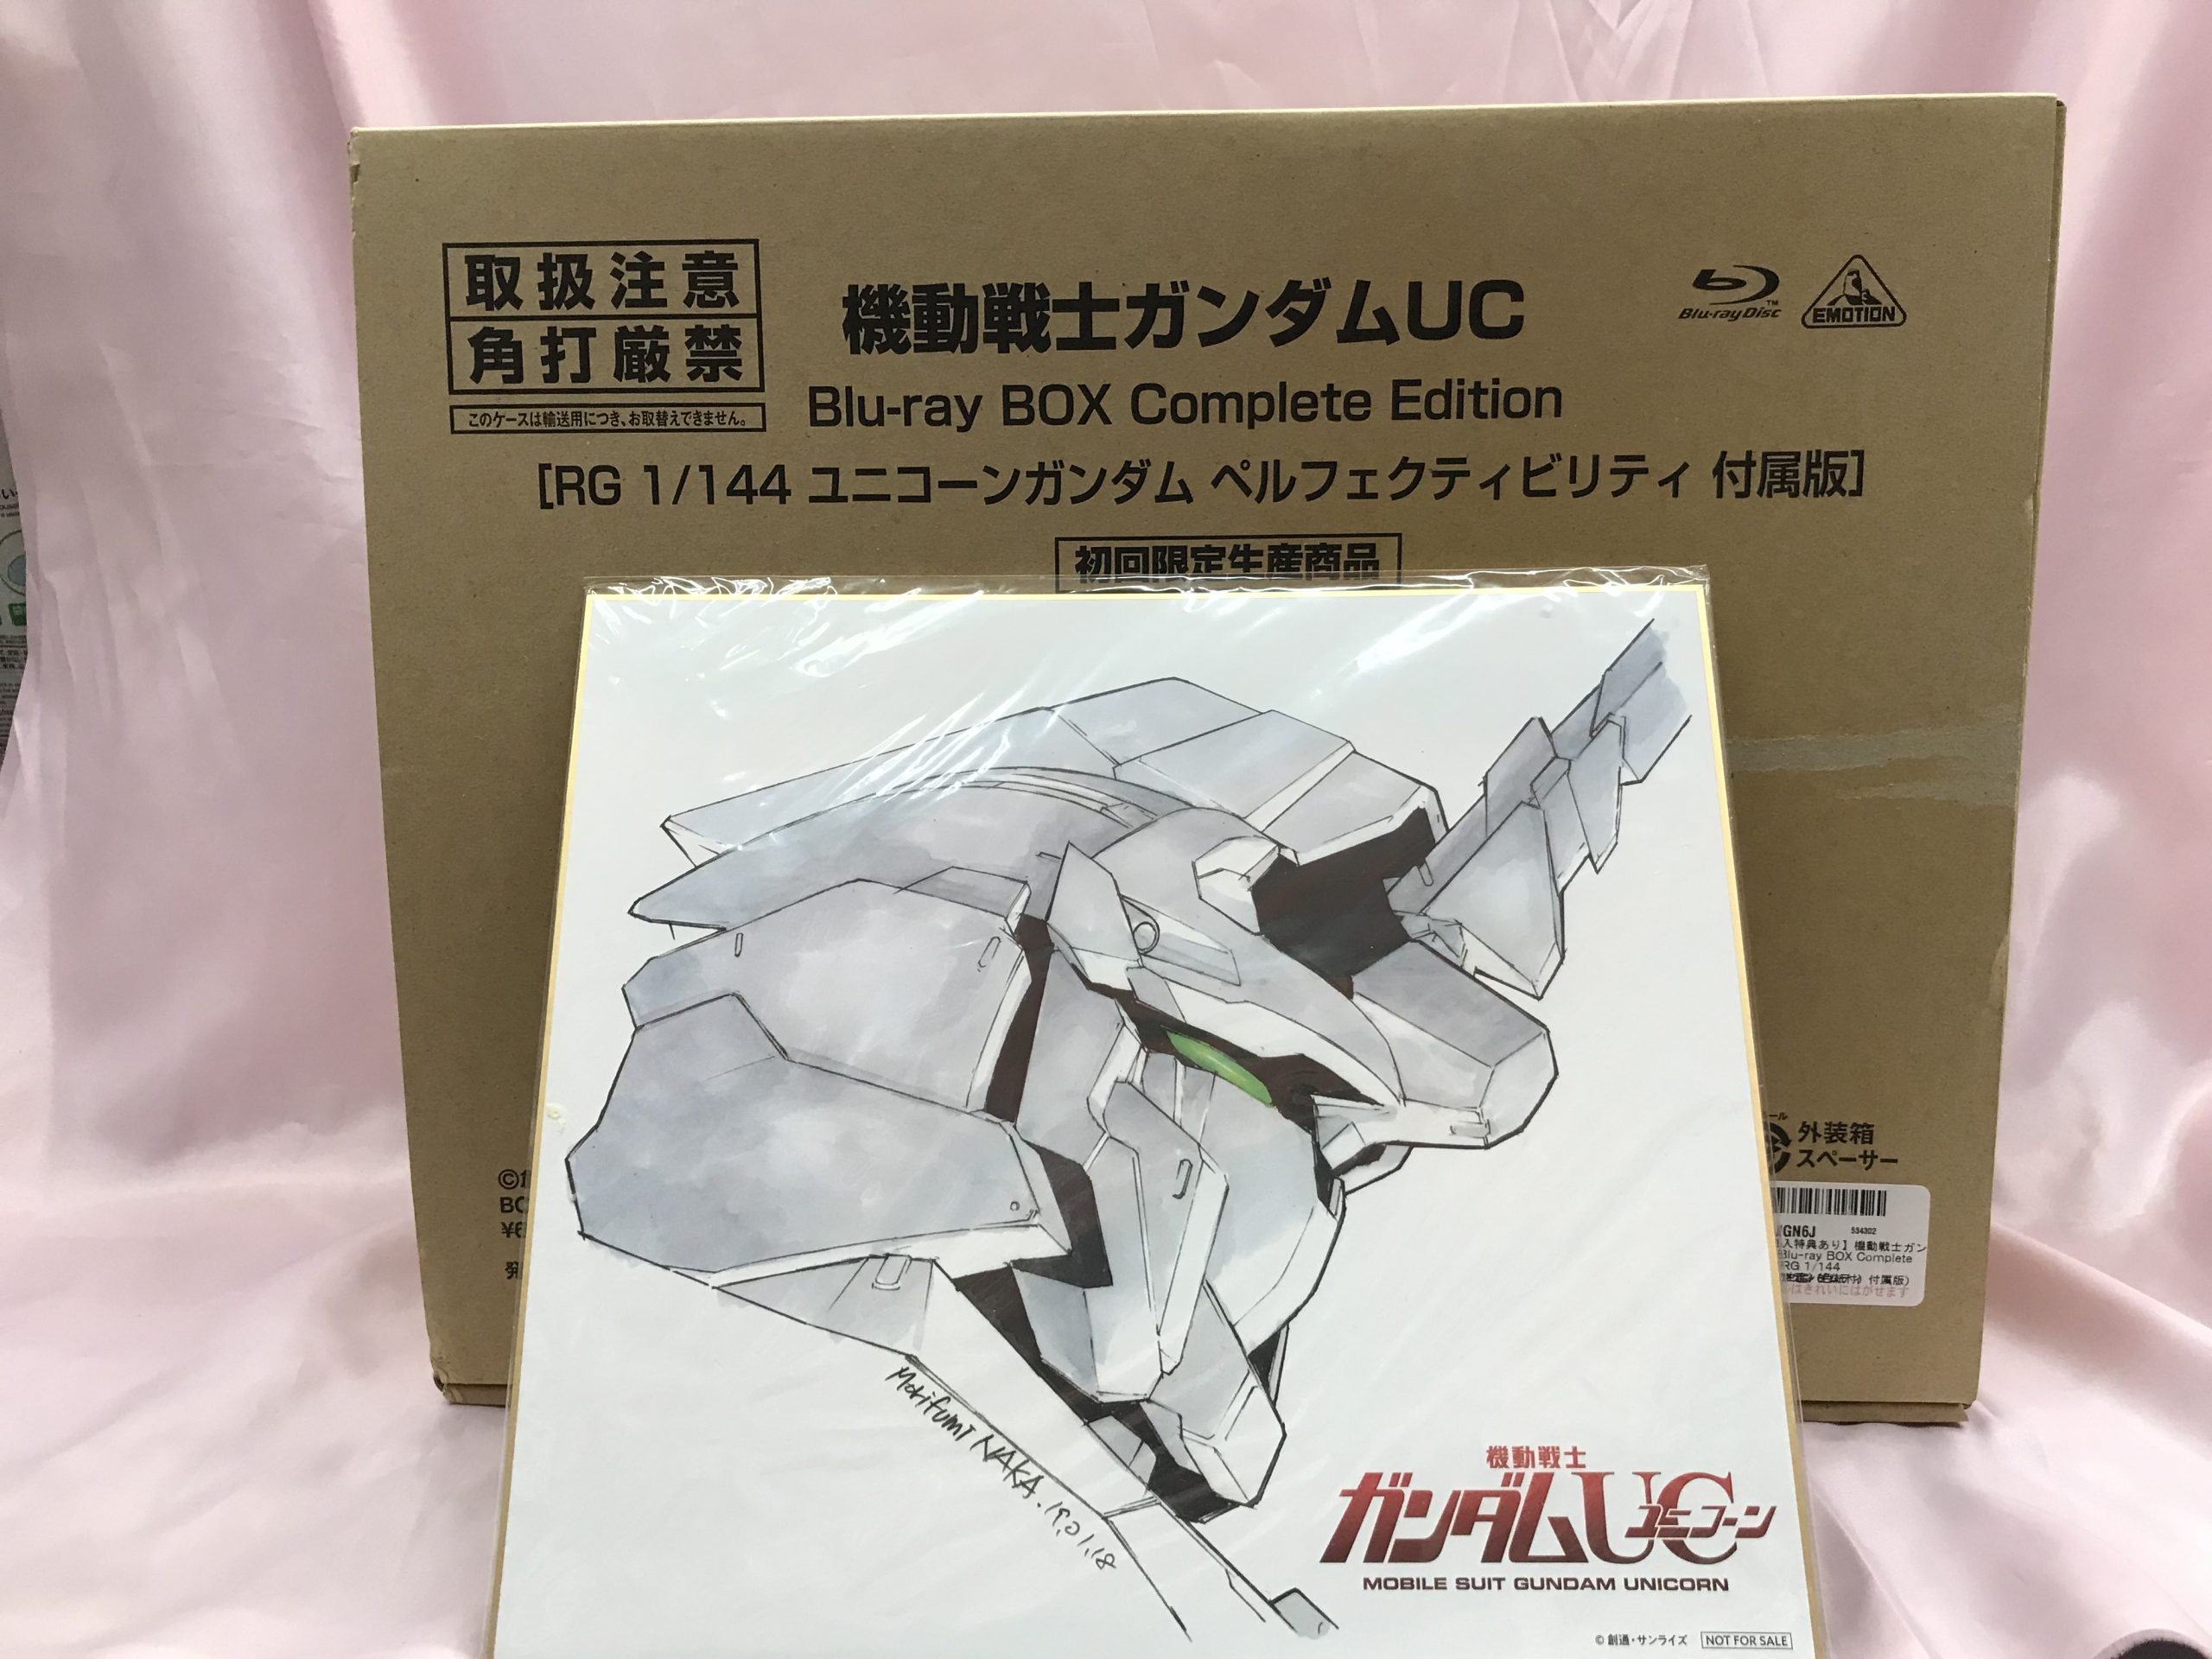 日本購入機動戦士ガンダムUC Blu-ray BOX Complete EditionRG 1/144 ユニコーンガンダム ペルフェクティビリティ付属版初回限定生産版Blu-ray Disc 機動戦士ガンダムUC（ユニコーン）